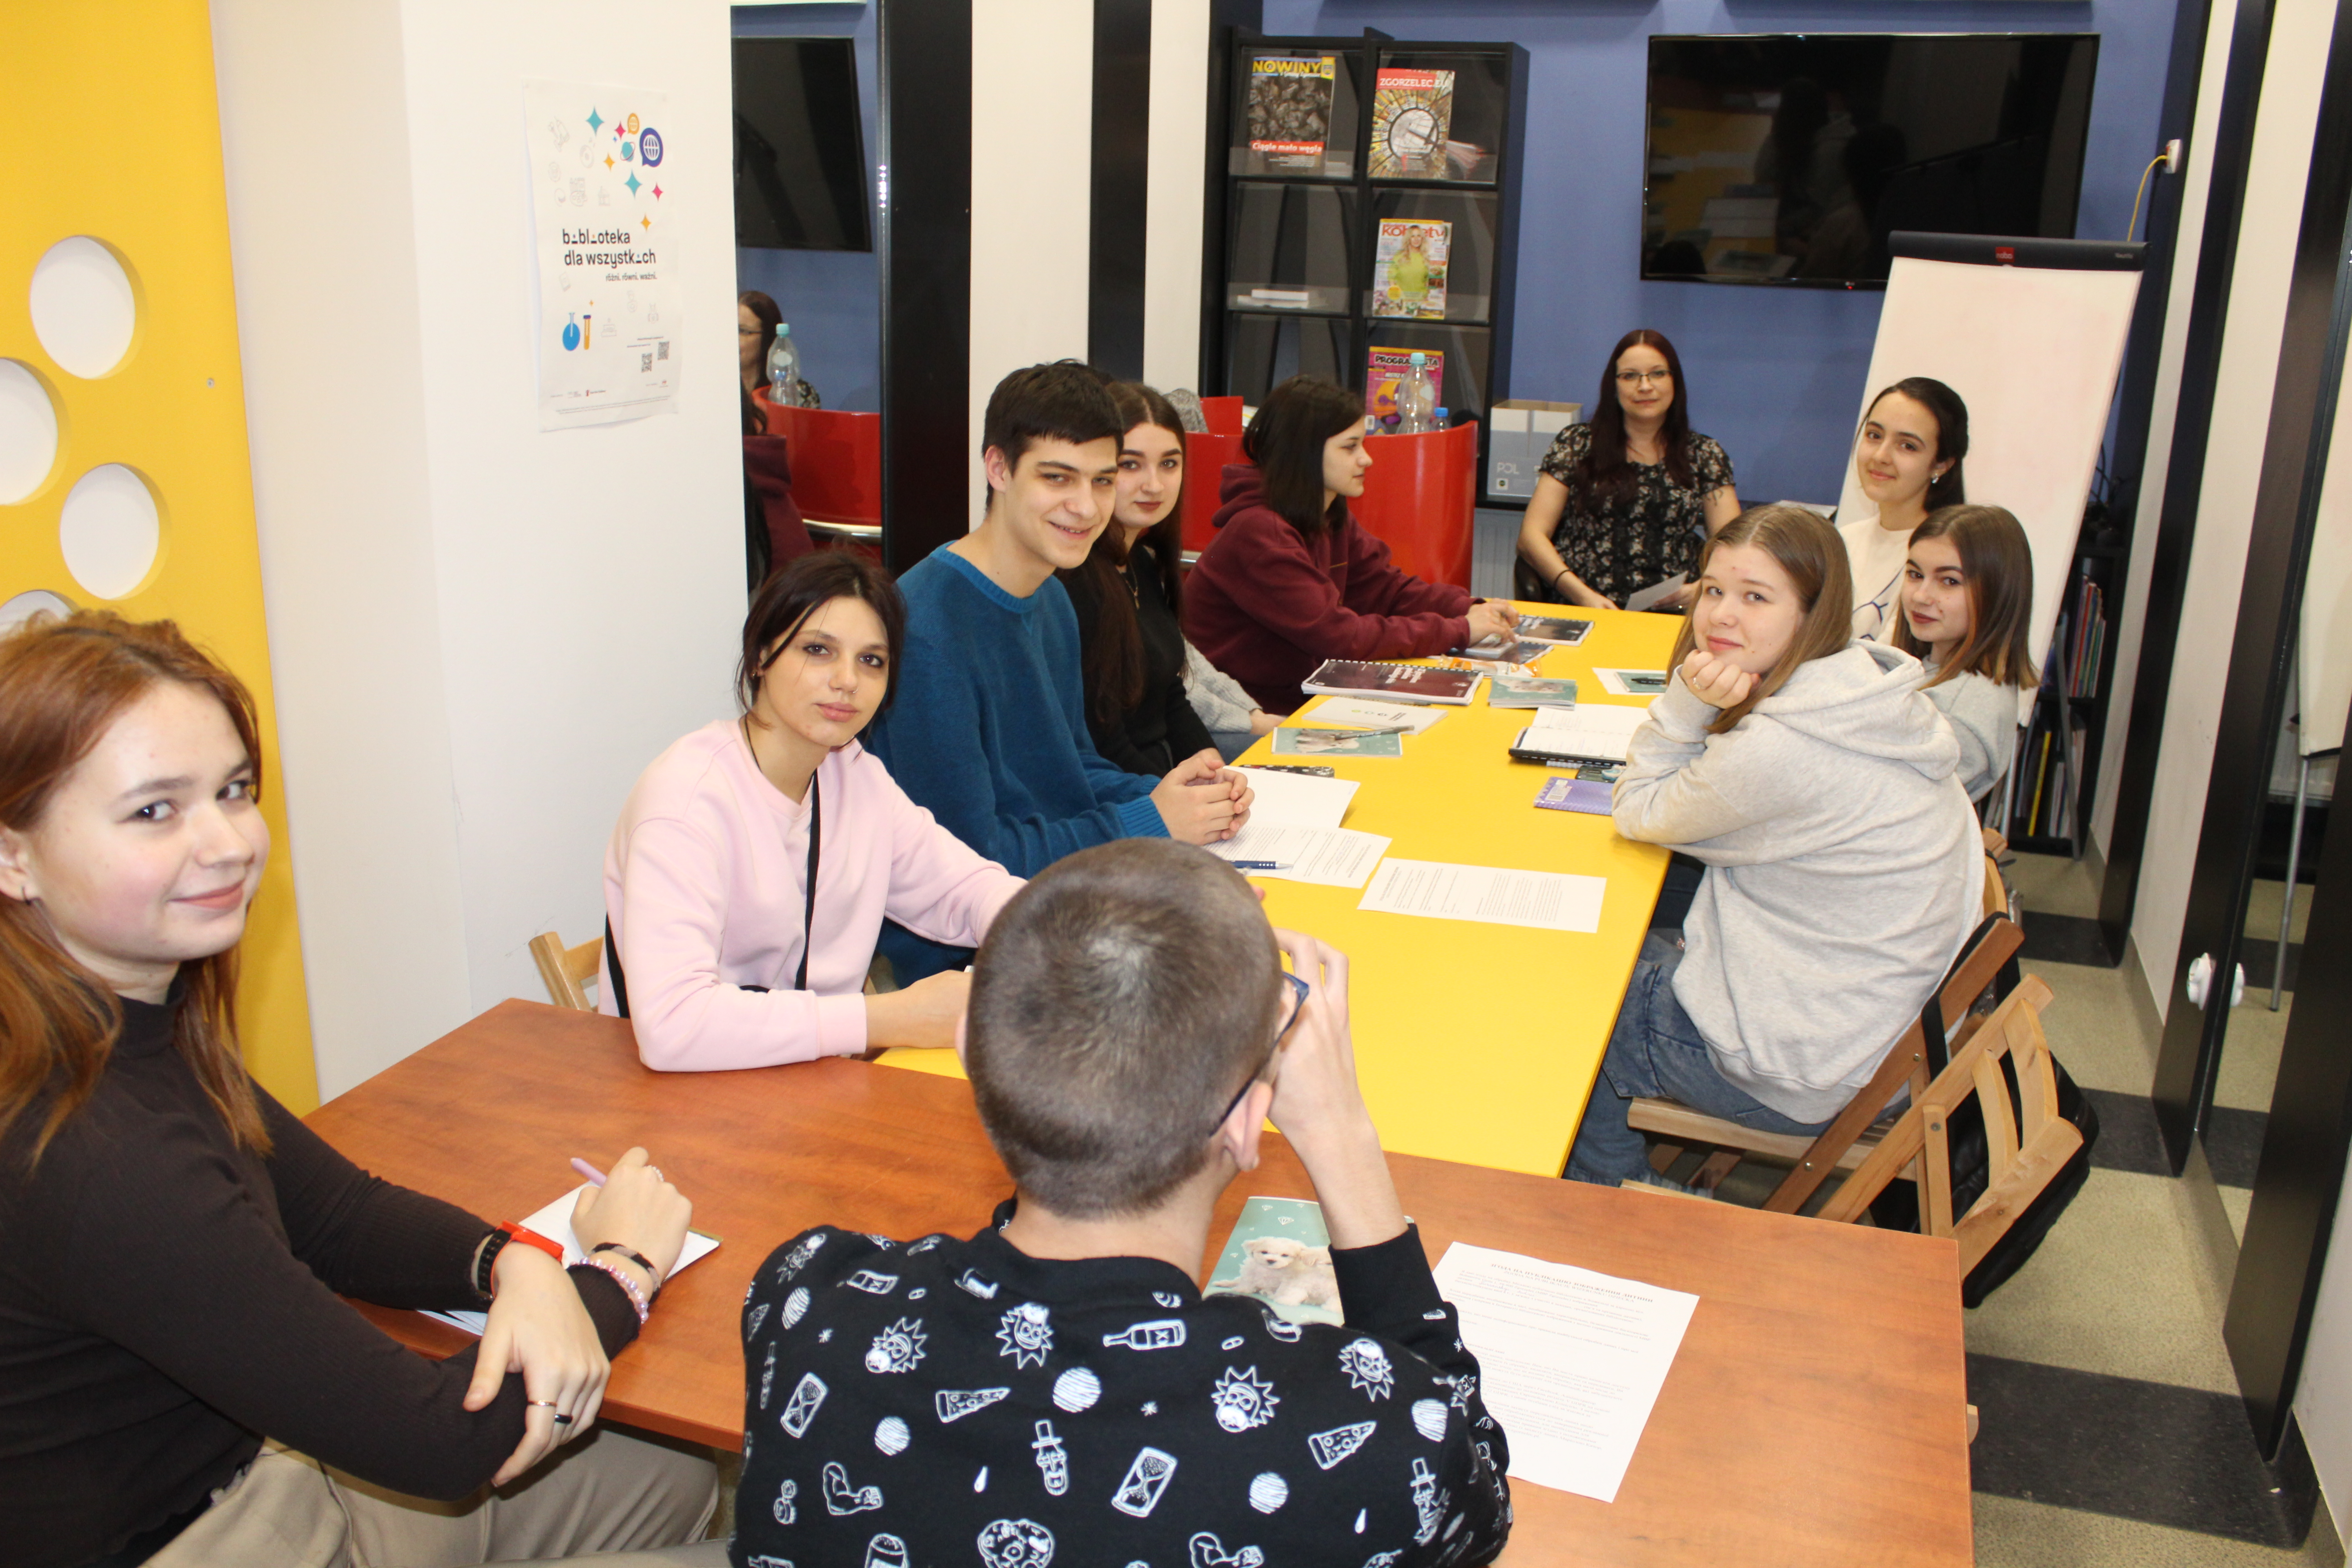 Grupa dziesięciu osób w wieku nastoletnim siedzi przy żółtych stołach w kolorowo urządzonym pomieszczeniu. Na stołach leżą podręczniki do nauki.